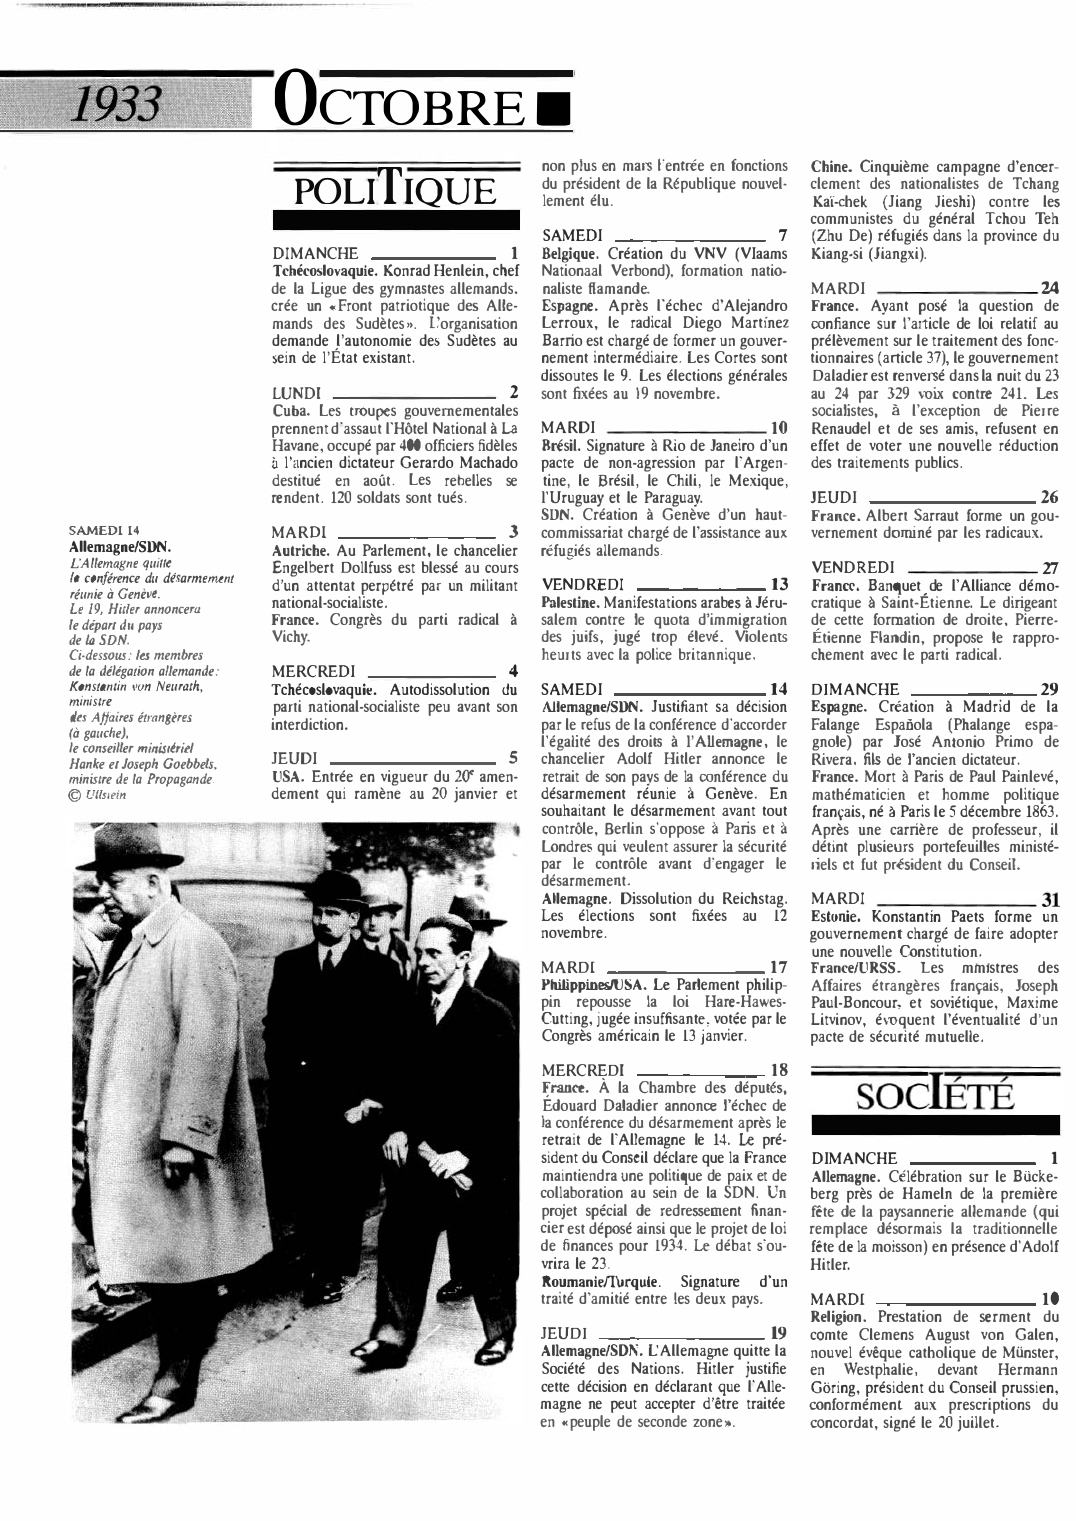 Prévisualisation du document 1933 OcTOBRE